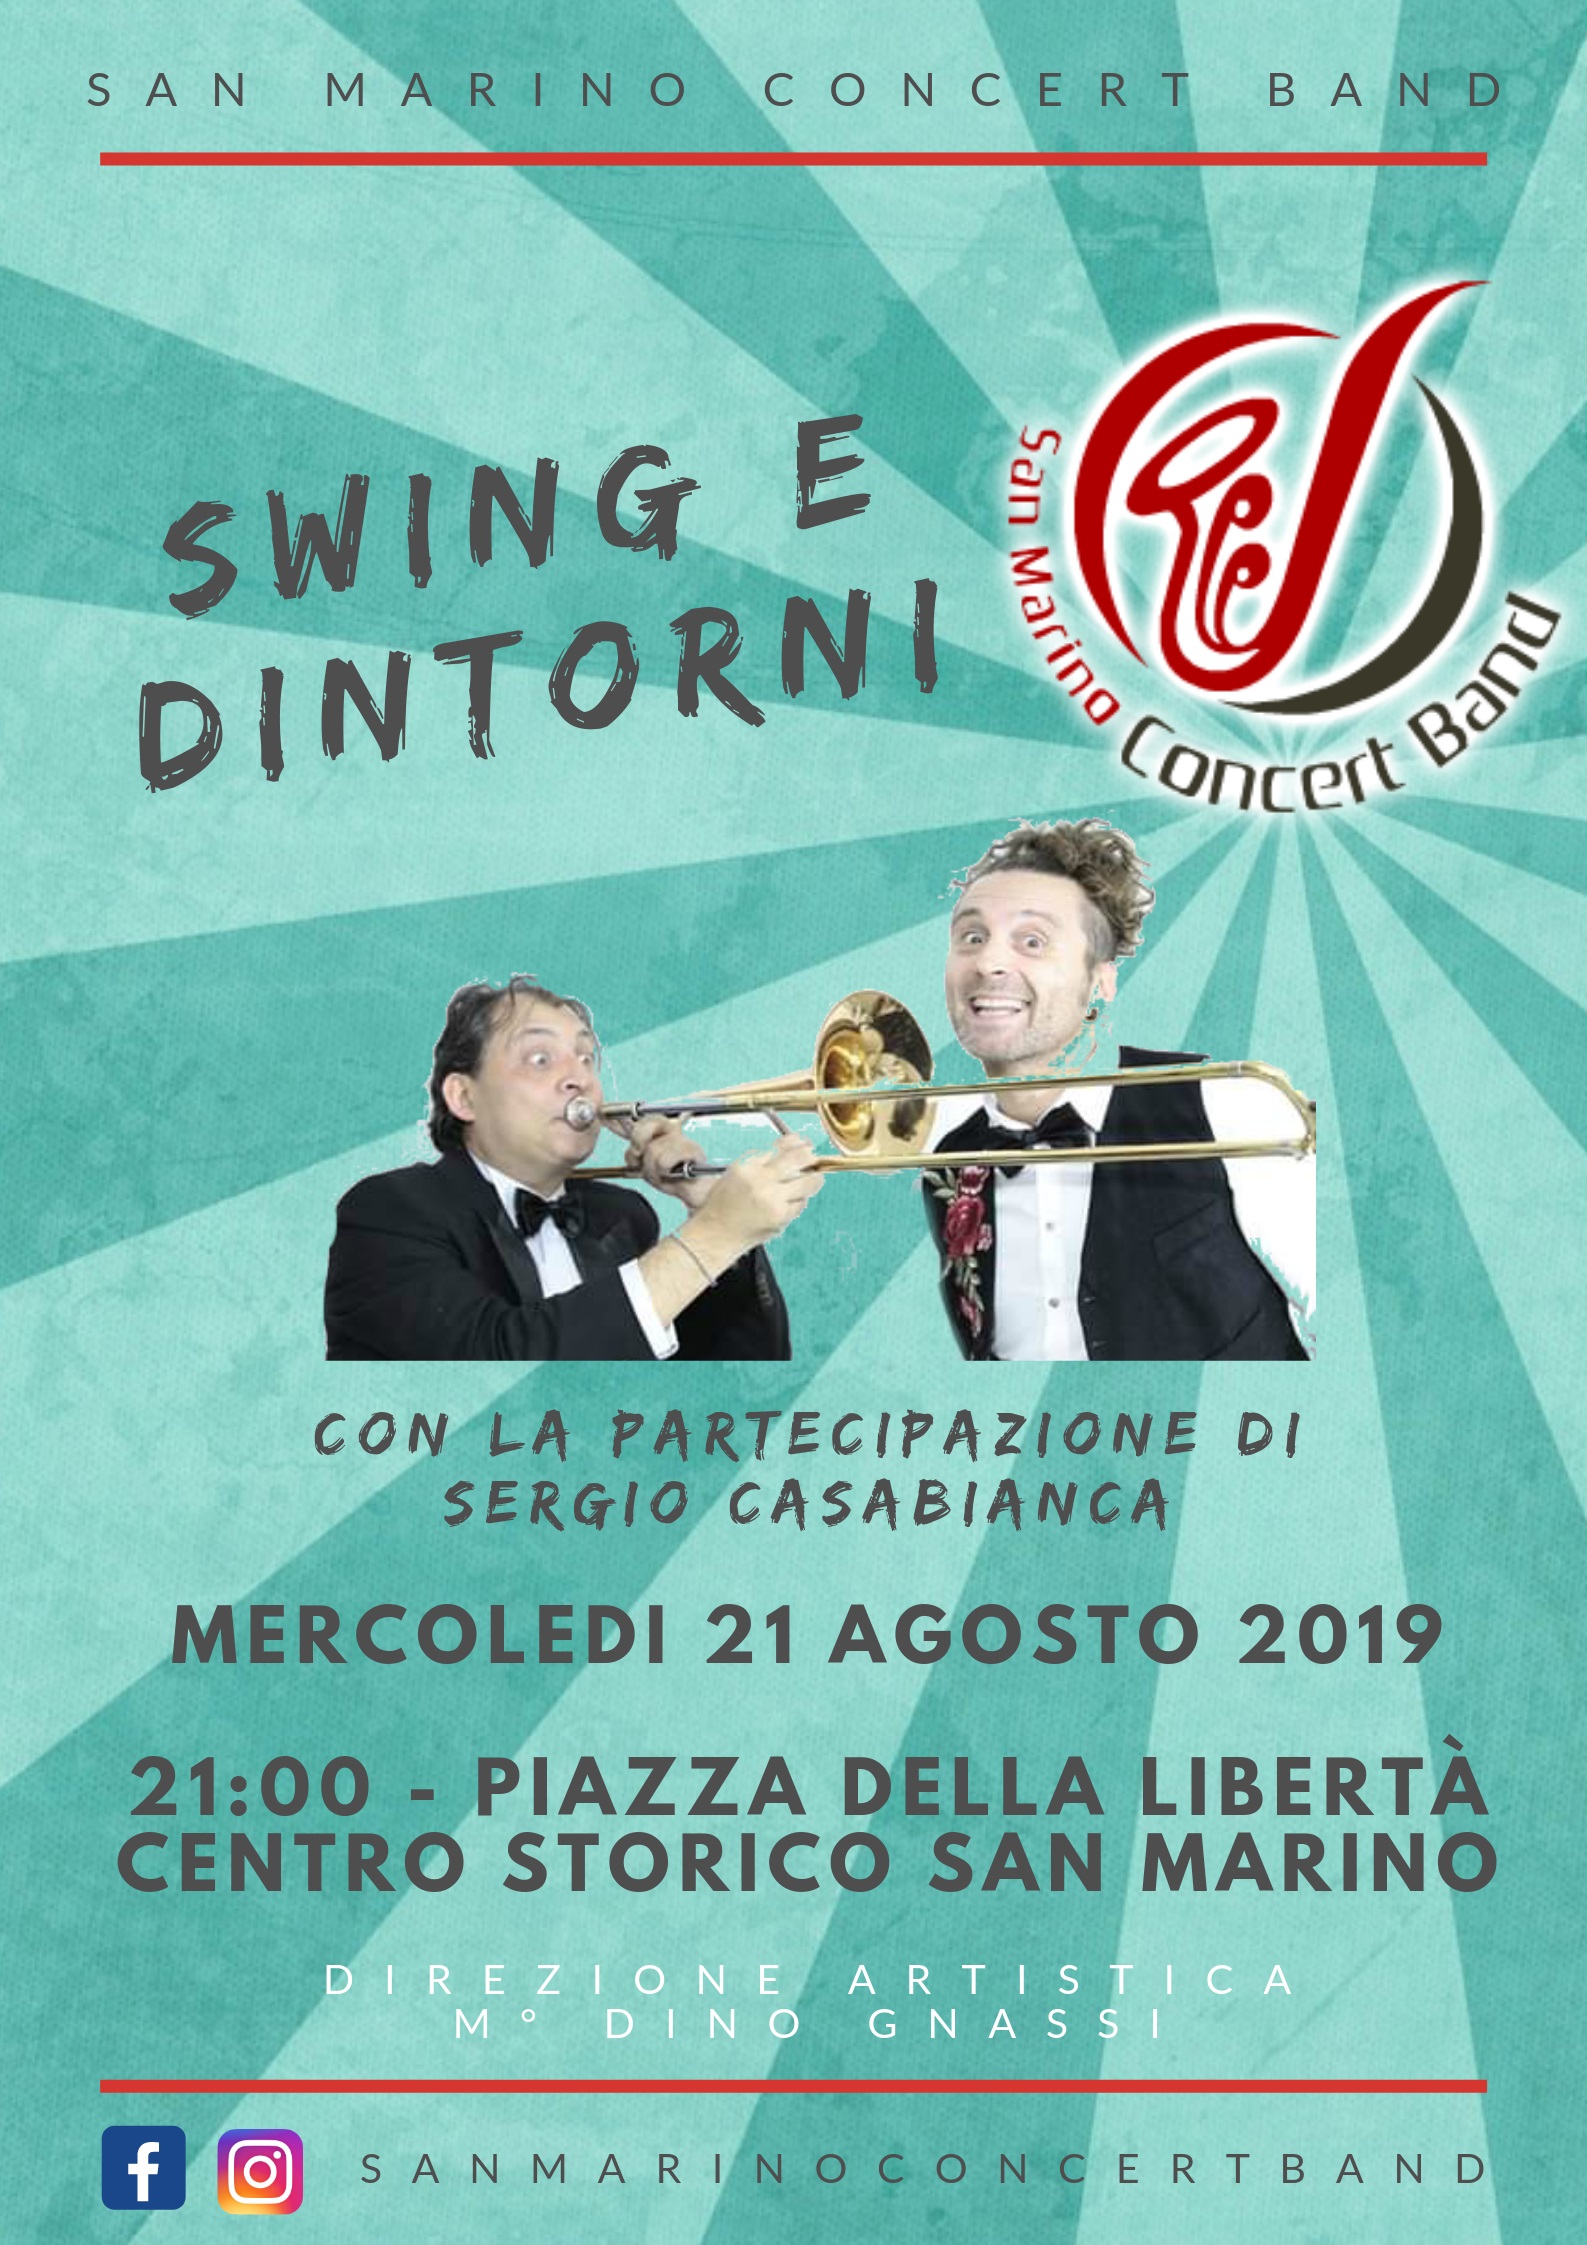 "Swing & dintorni" della San Marino Concert Band